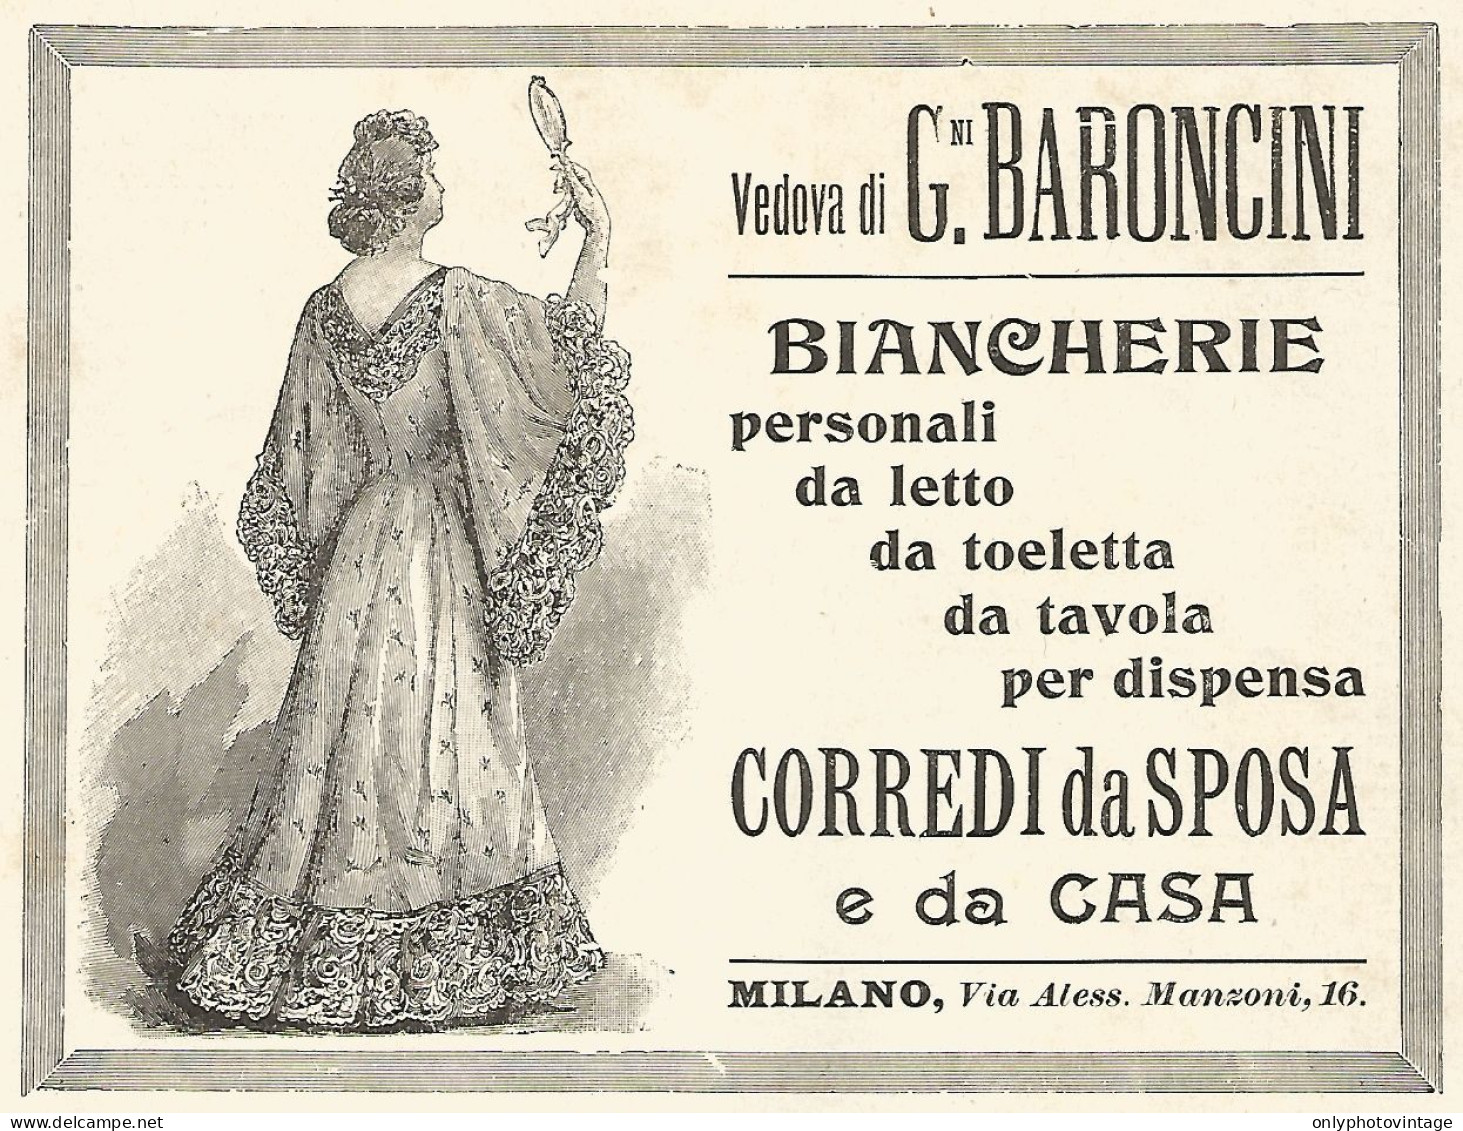 Corredi Da Sposa Vedova BARONCINI - Pubblicità Del 1903 - Old Advertising - Werbung